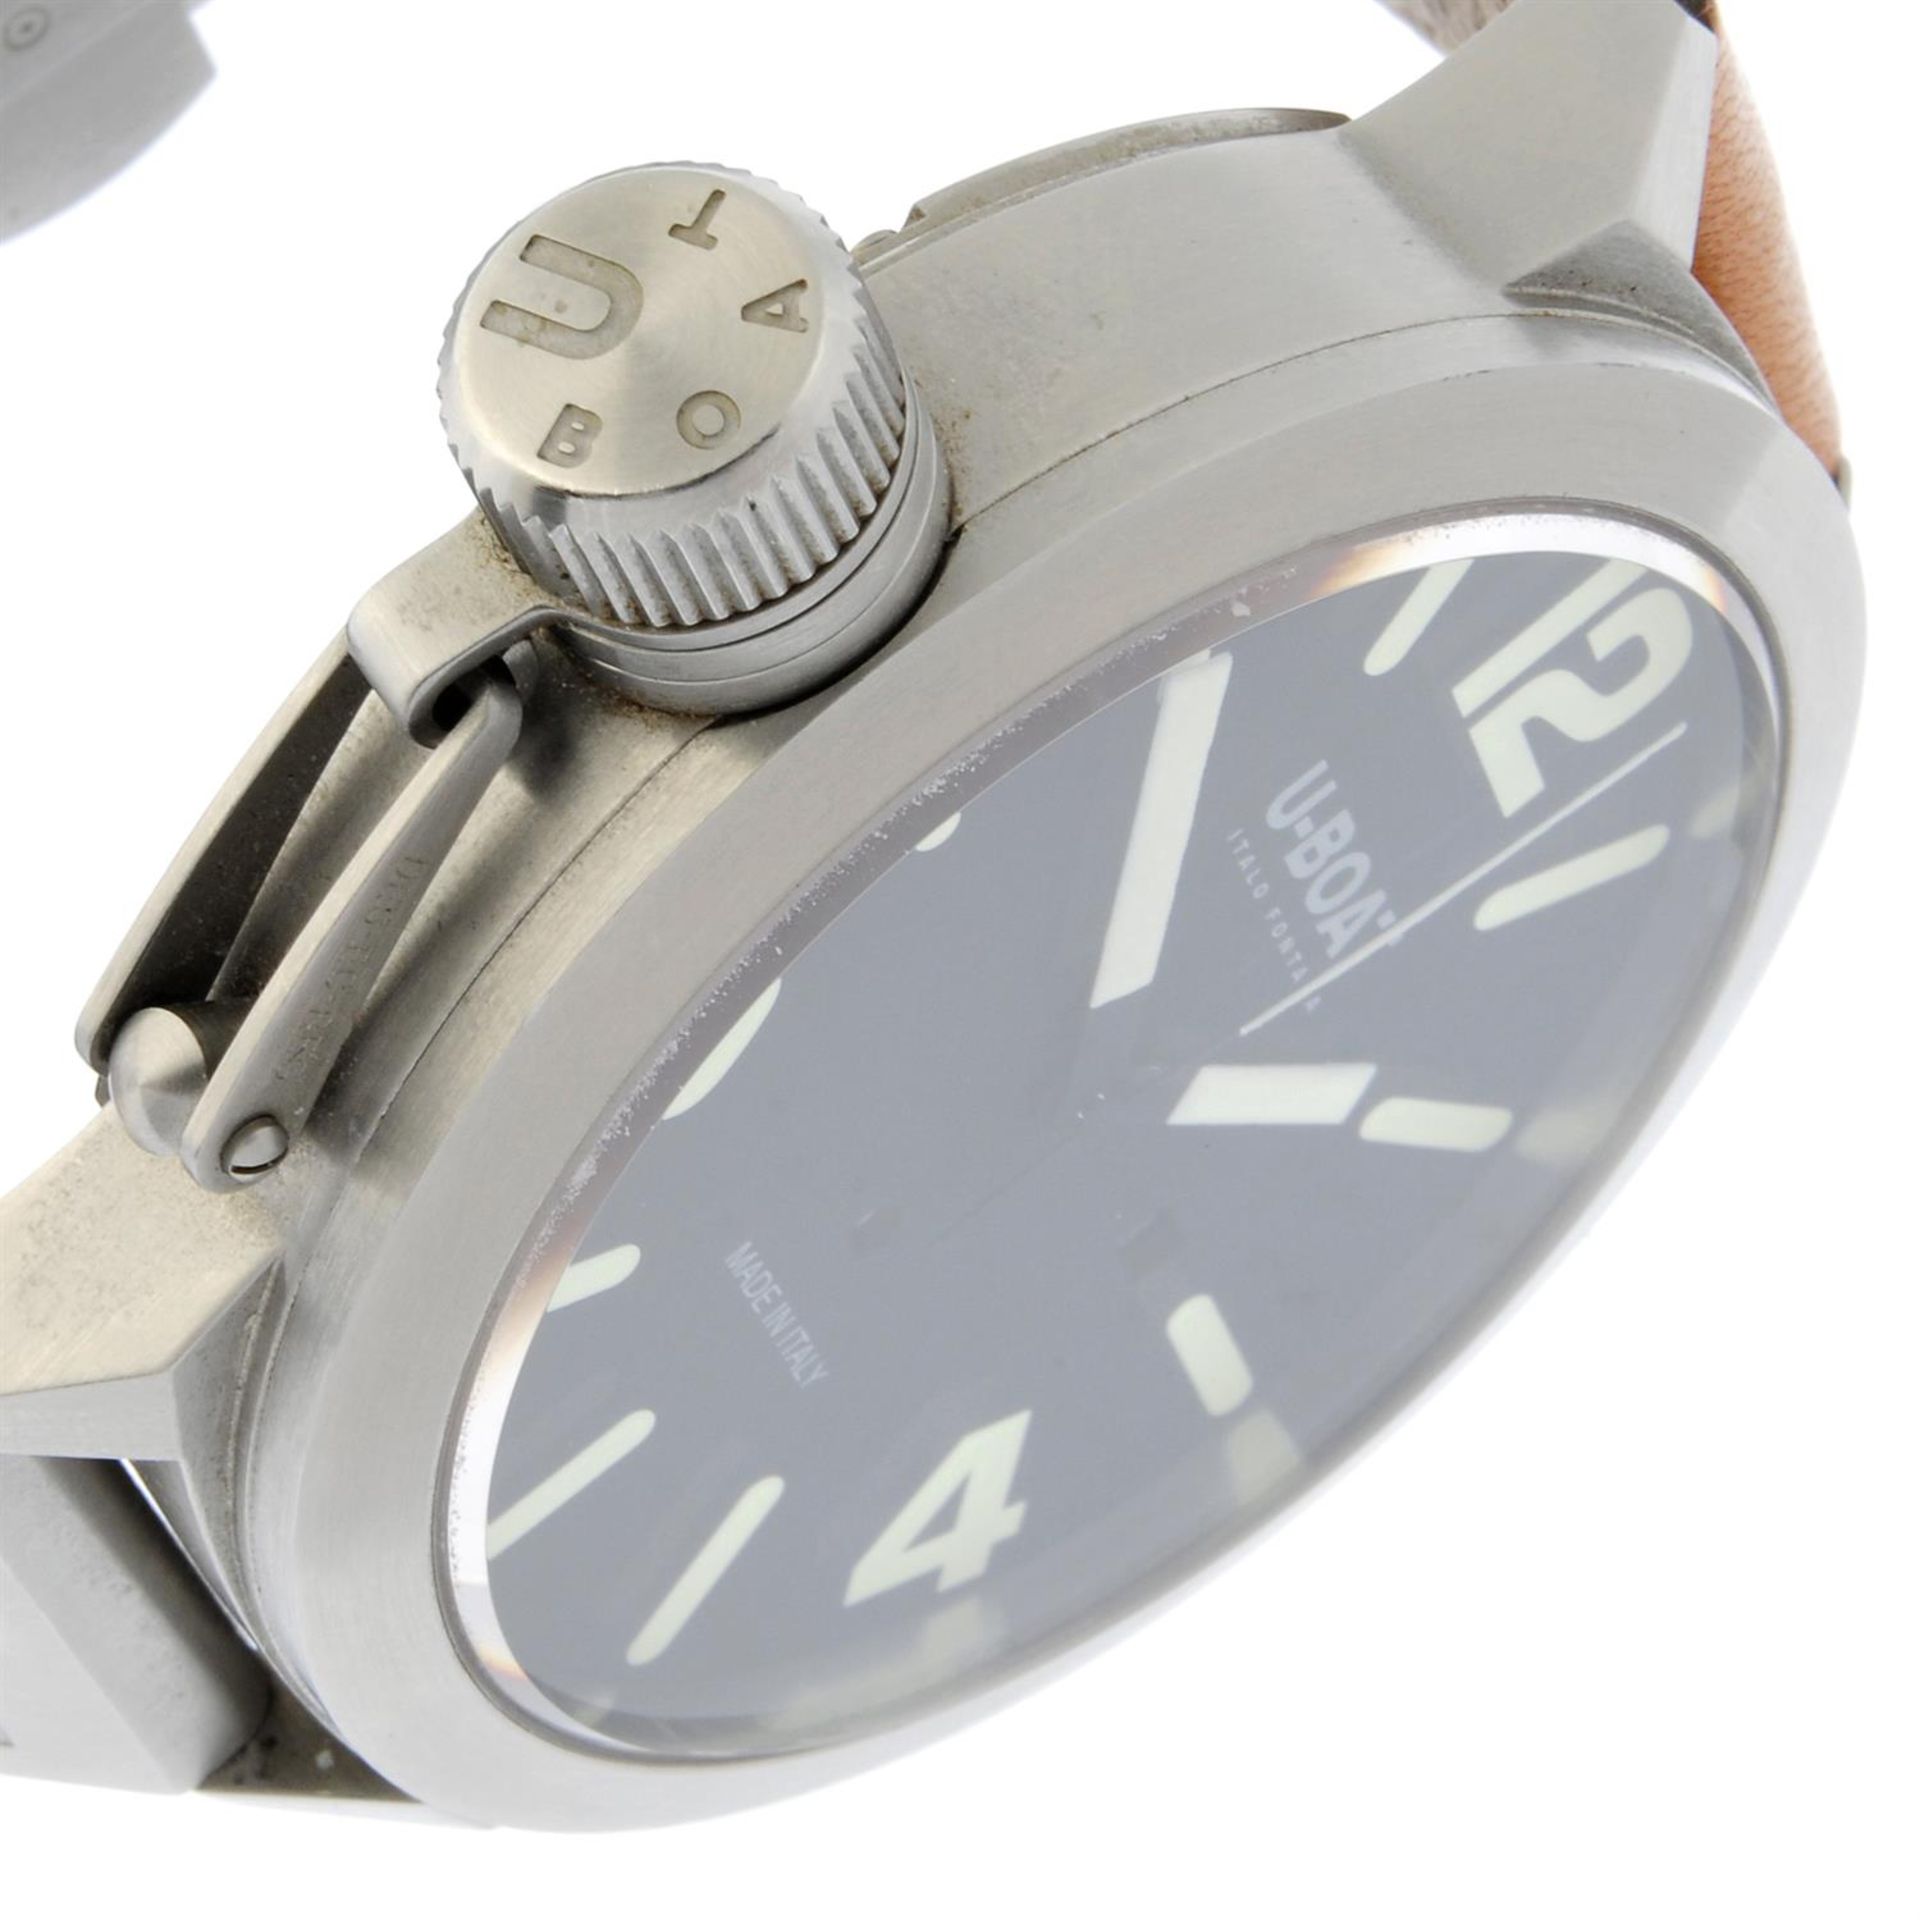 U-Boat - a Classico watch, 52mm. - Bild 3 aus 6